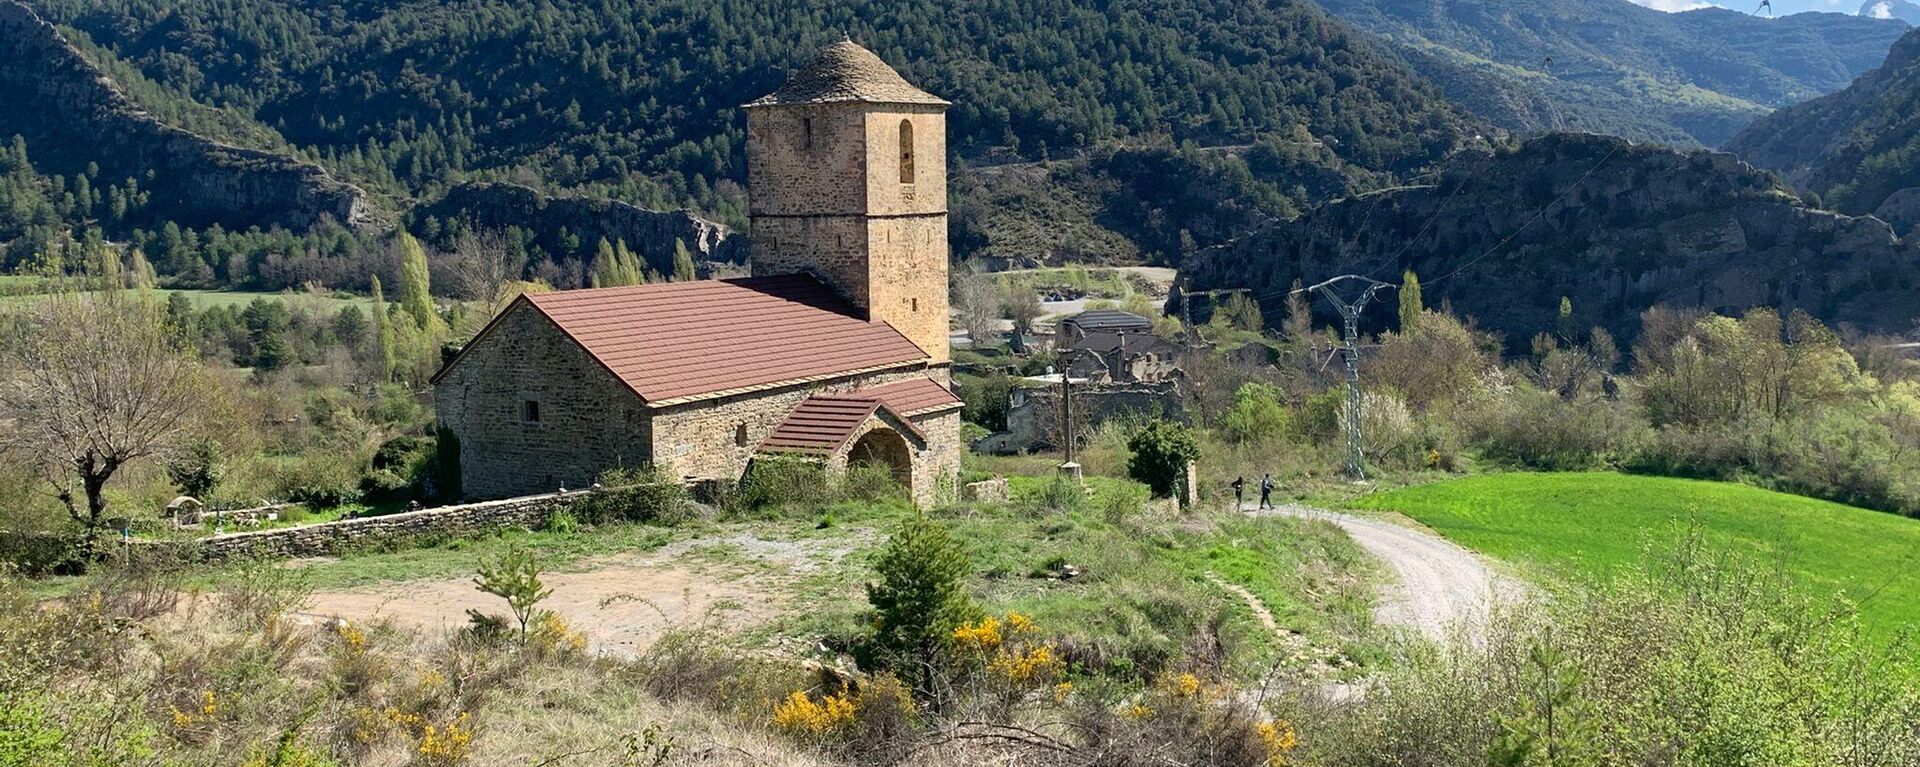 Vista de la iglesia de San Miguel de Jánovas (Huesca) - Sputnik Mundo, 1920, 25.04.2021